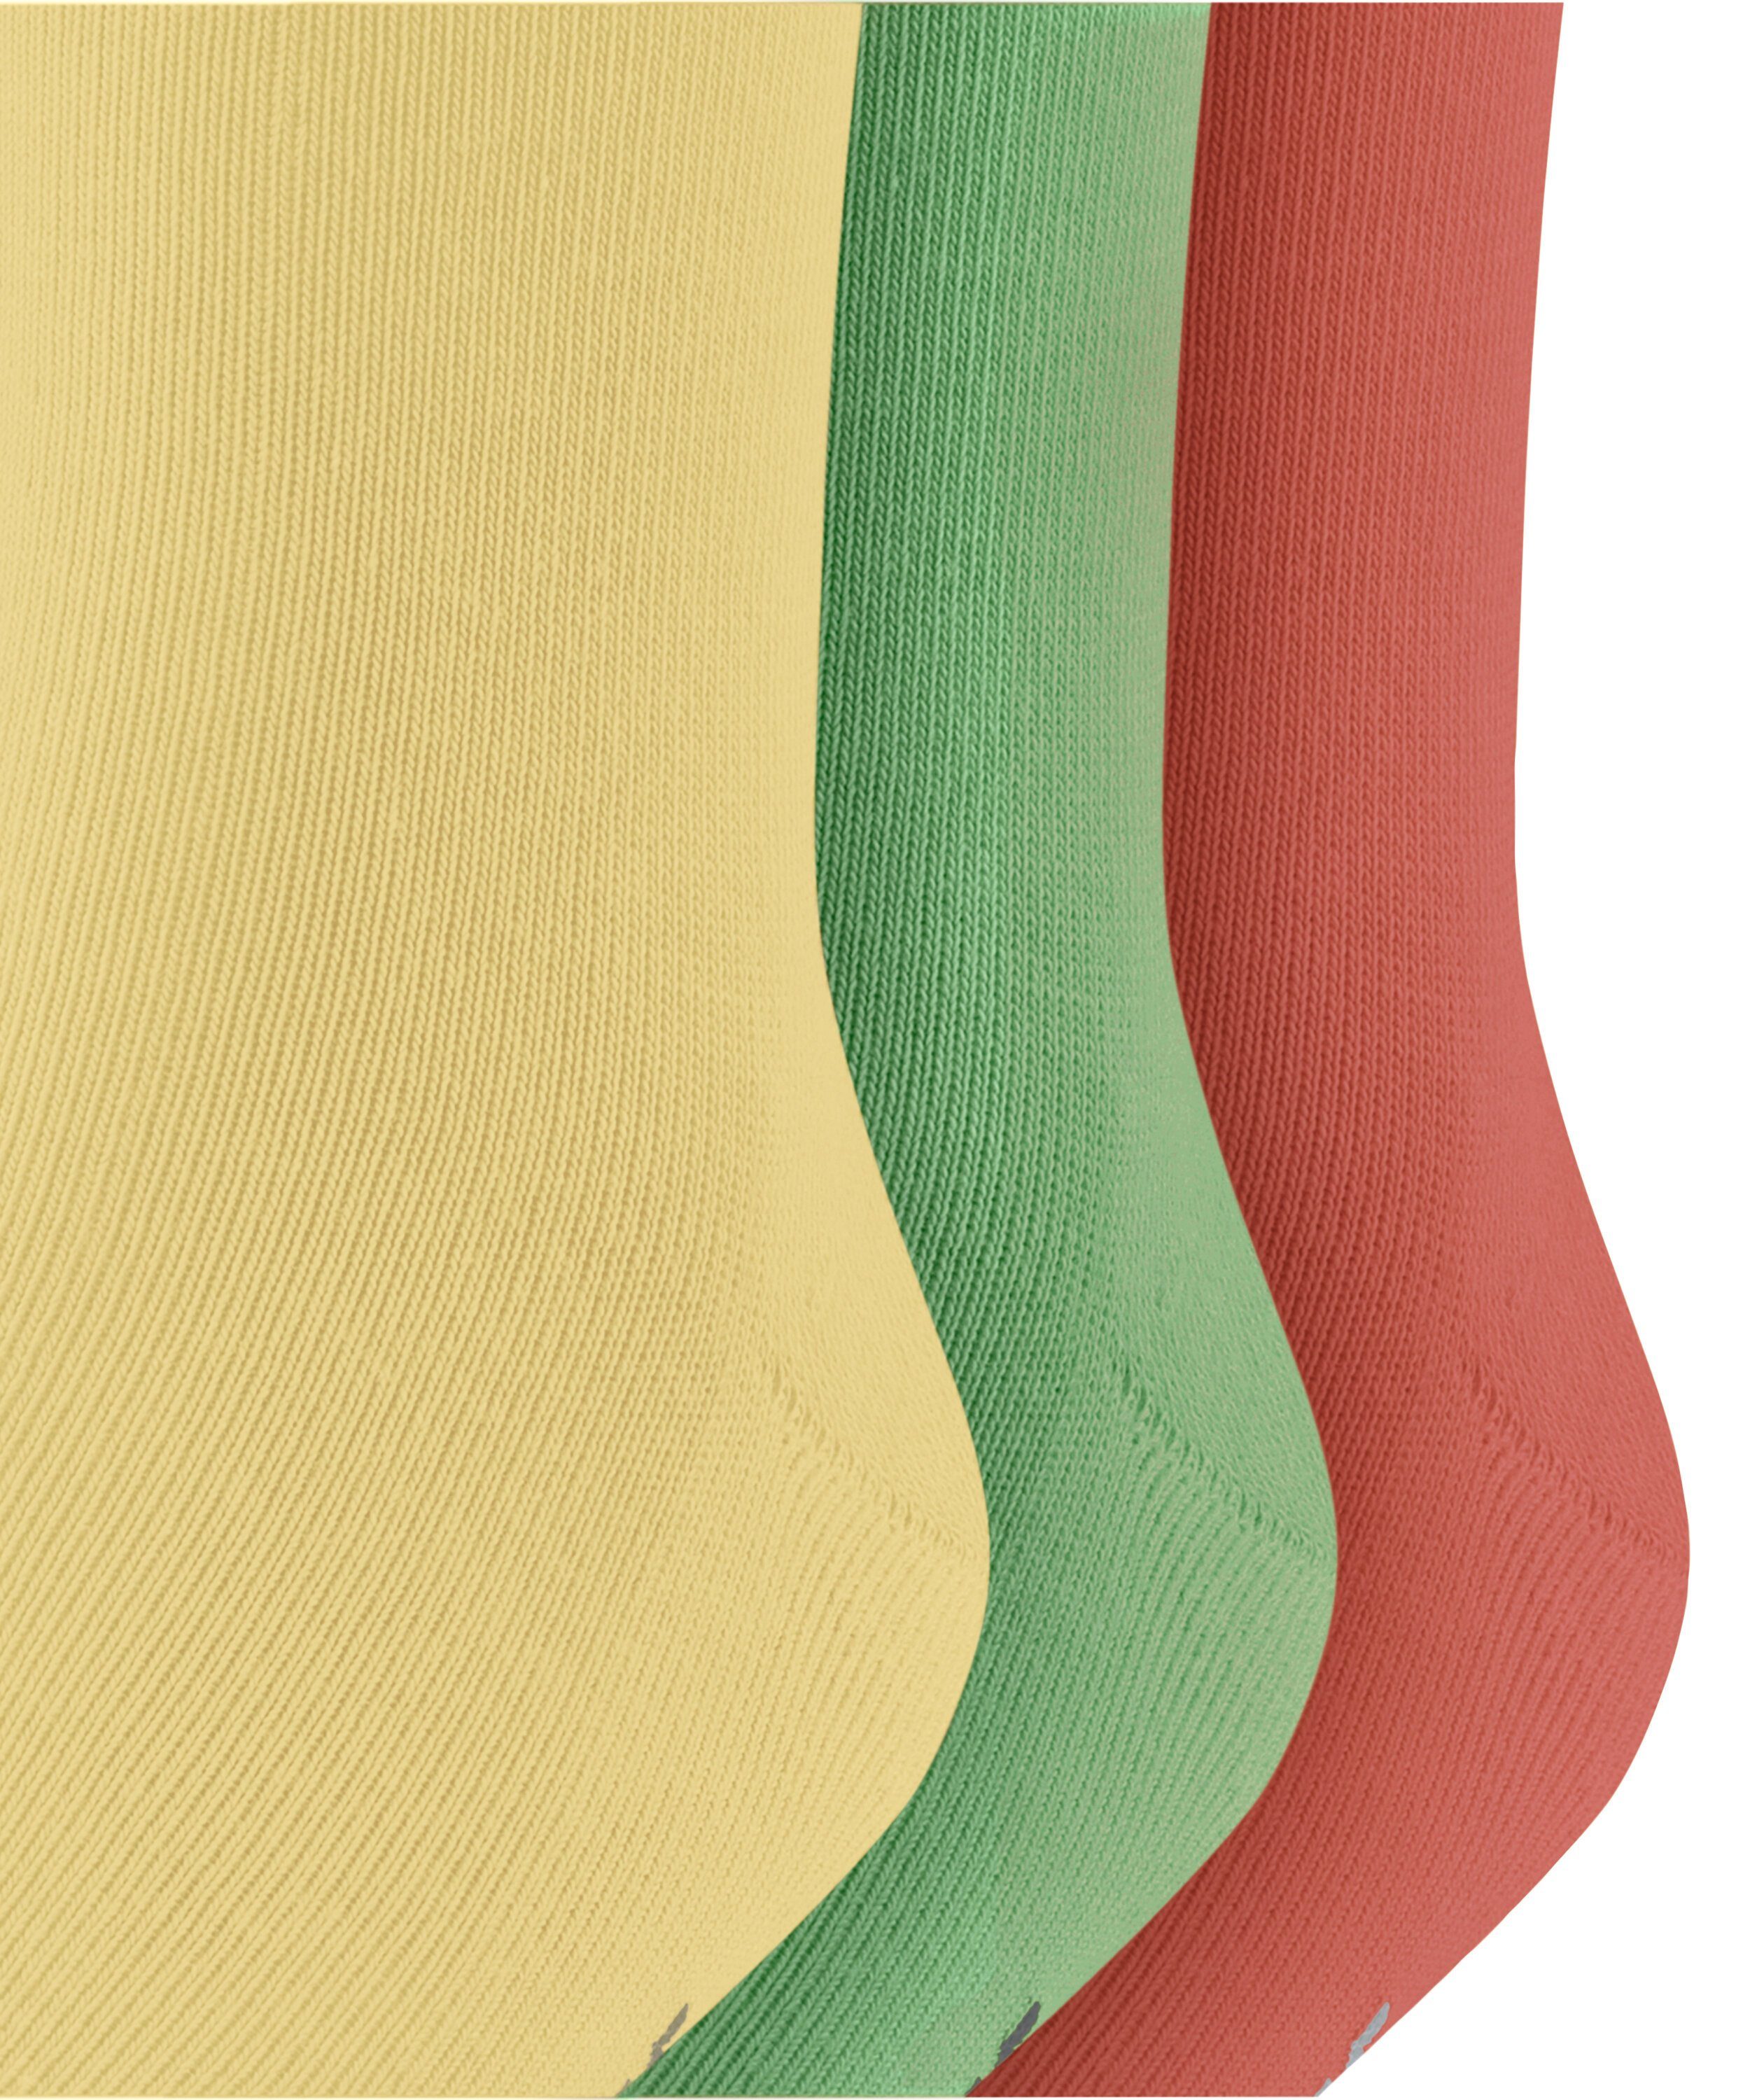 Mixed (3-Paar) FALKE Socken 3-Pack Family (0040) sortiment